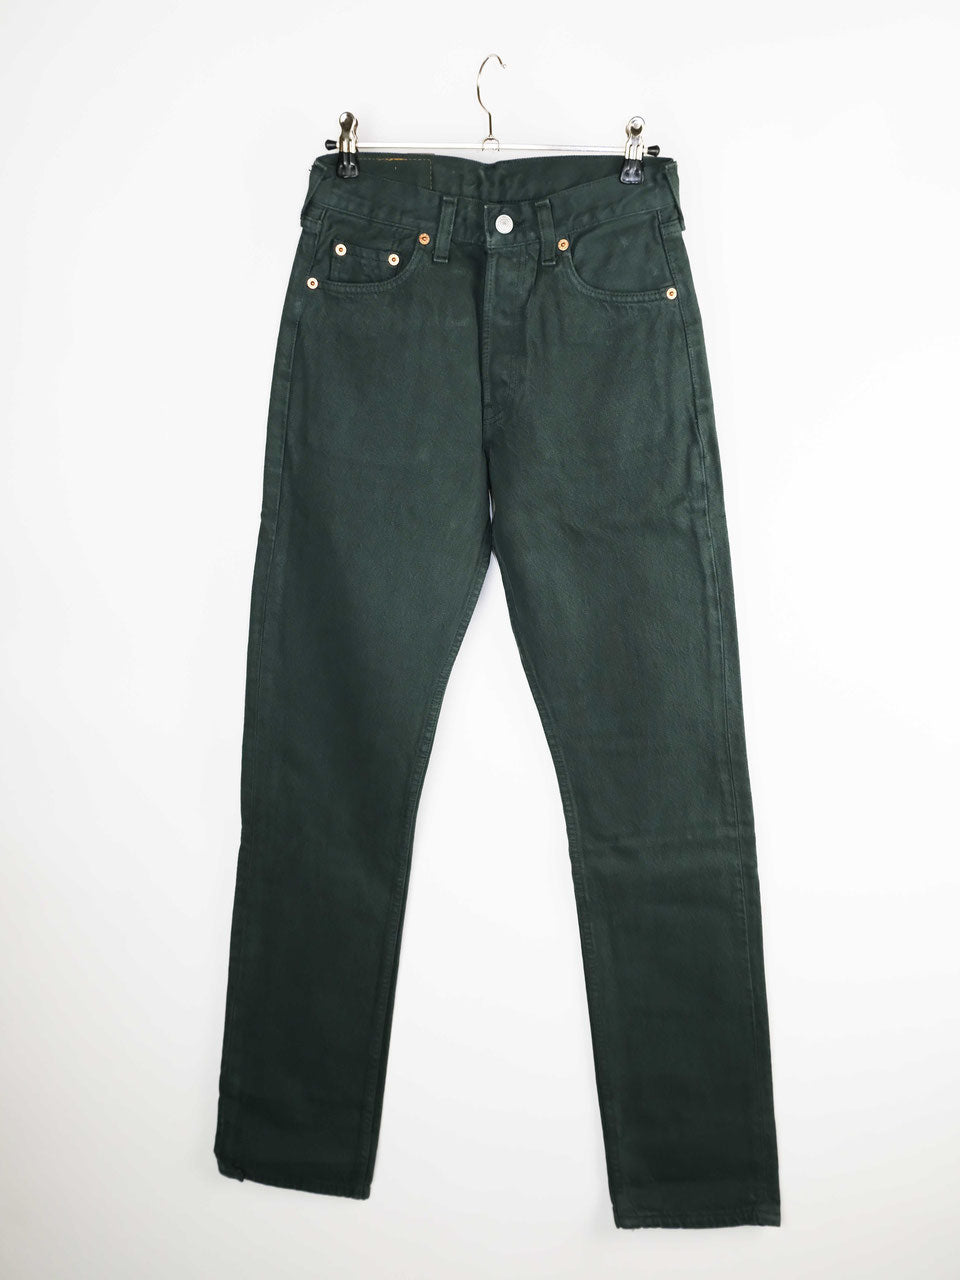 Levis Jeans 501 dark green deadstock